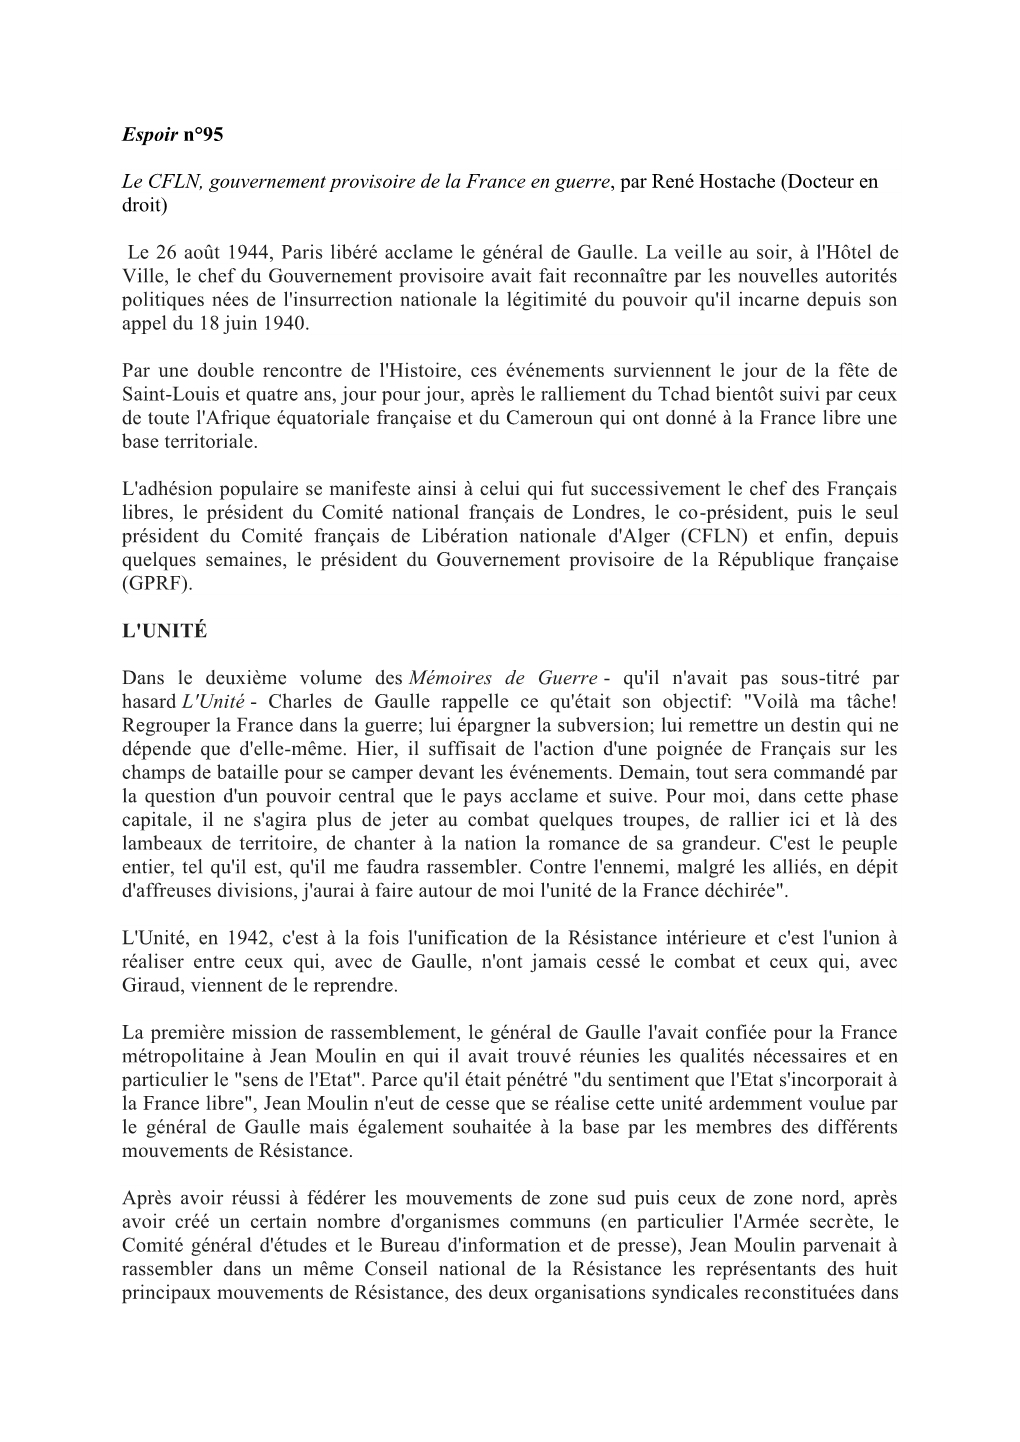 Espoir N°95 Le CFLN, Gouvernement Provisoire De La France En Guerre